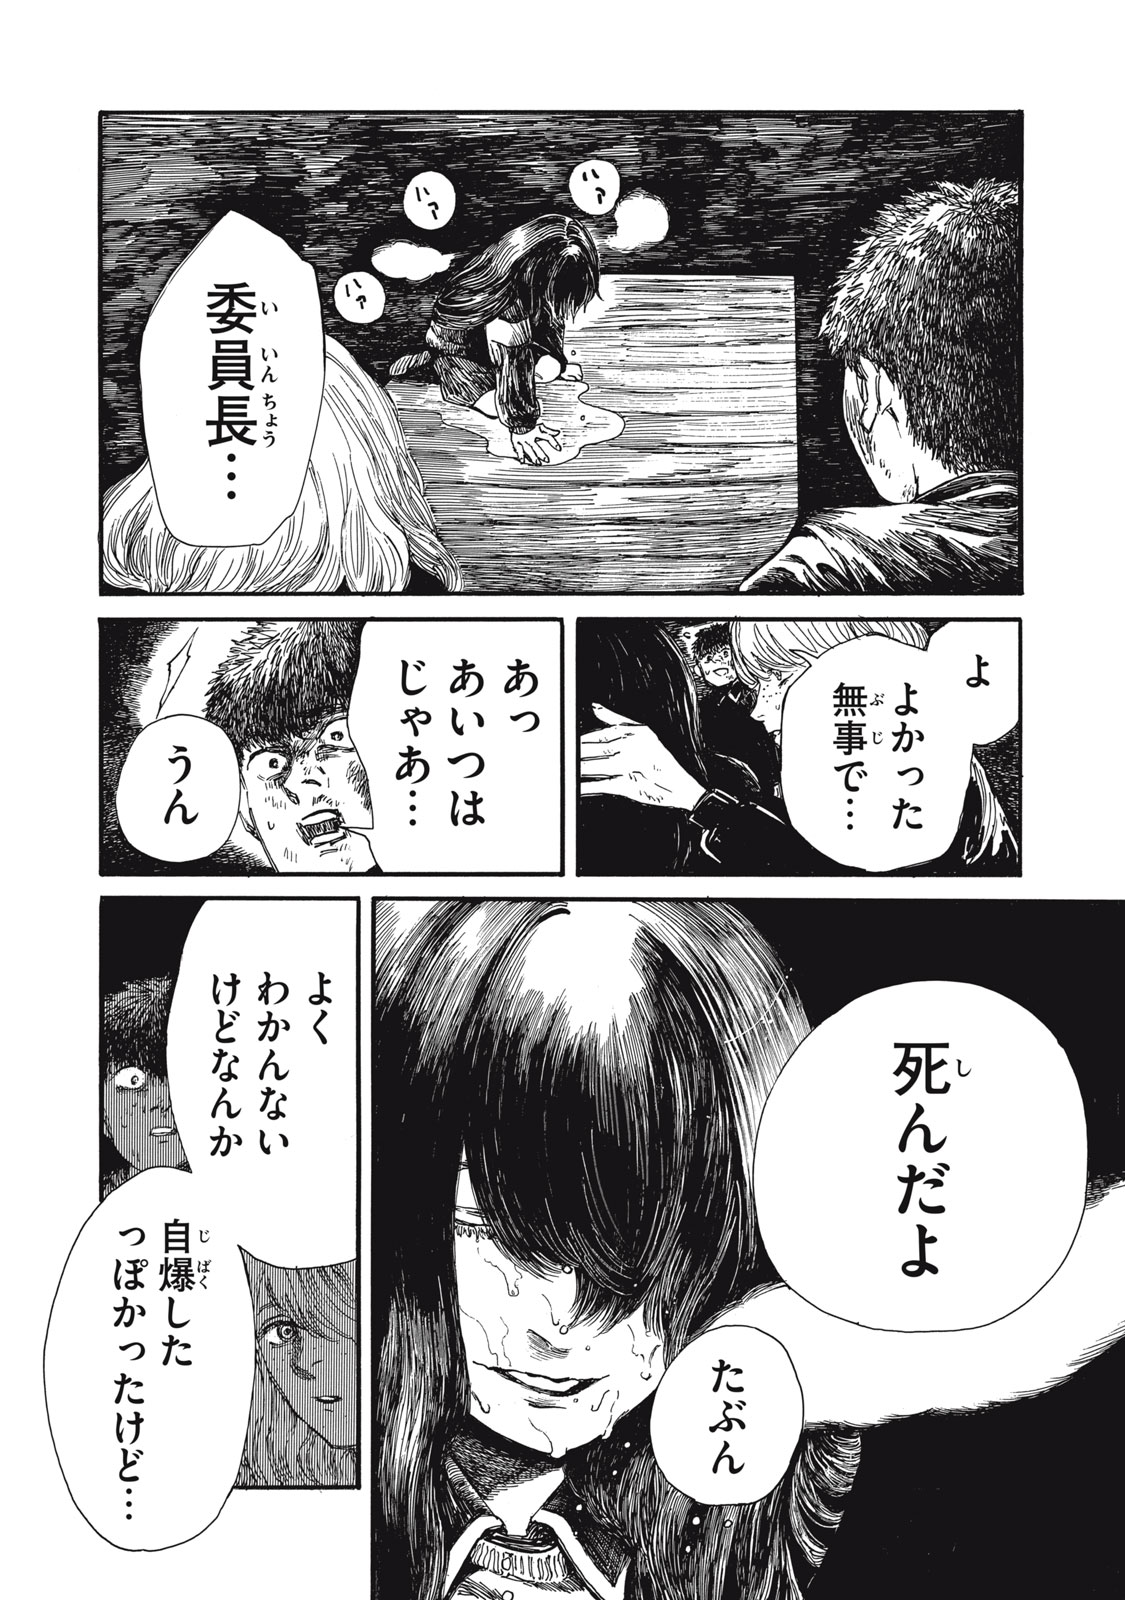 Watashi no Hara no Naka no Bakemono - Chapter 29 - Page 10